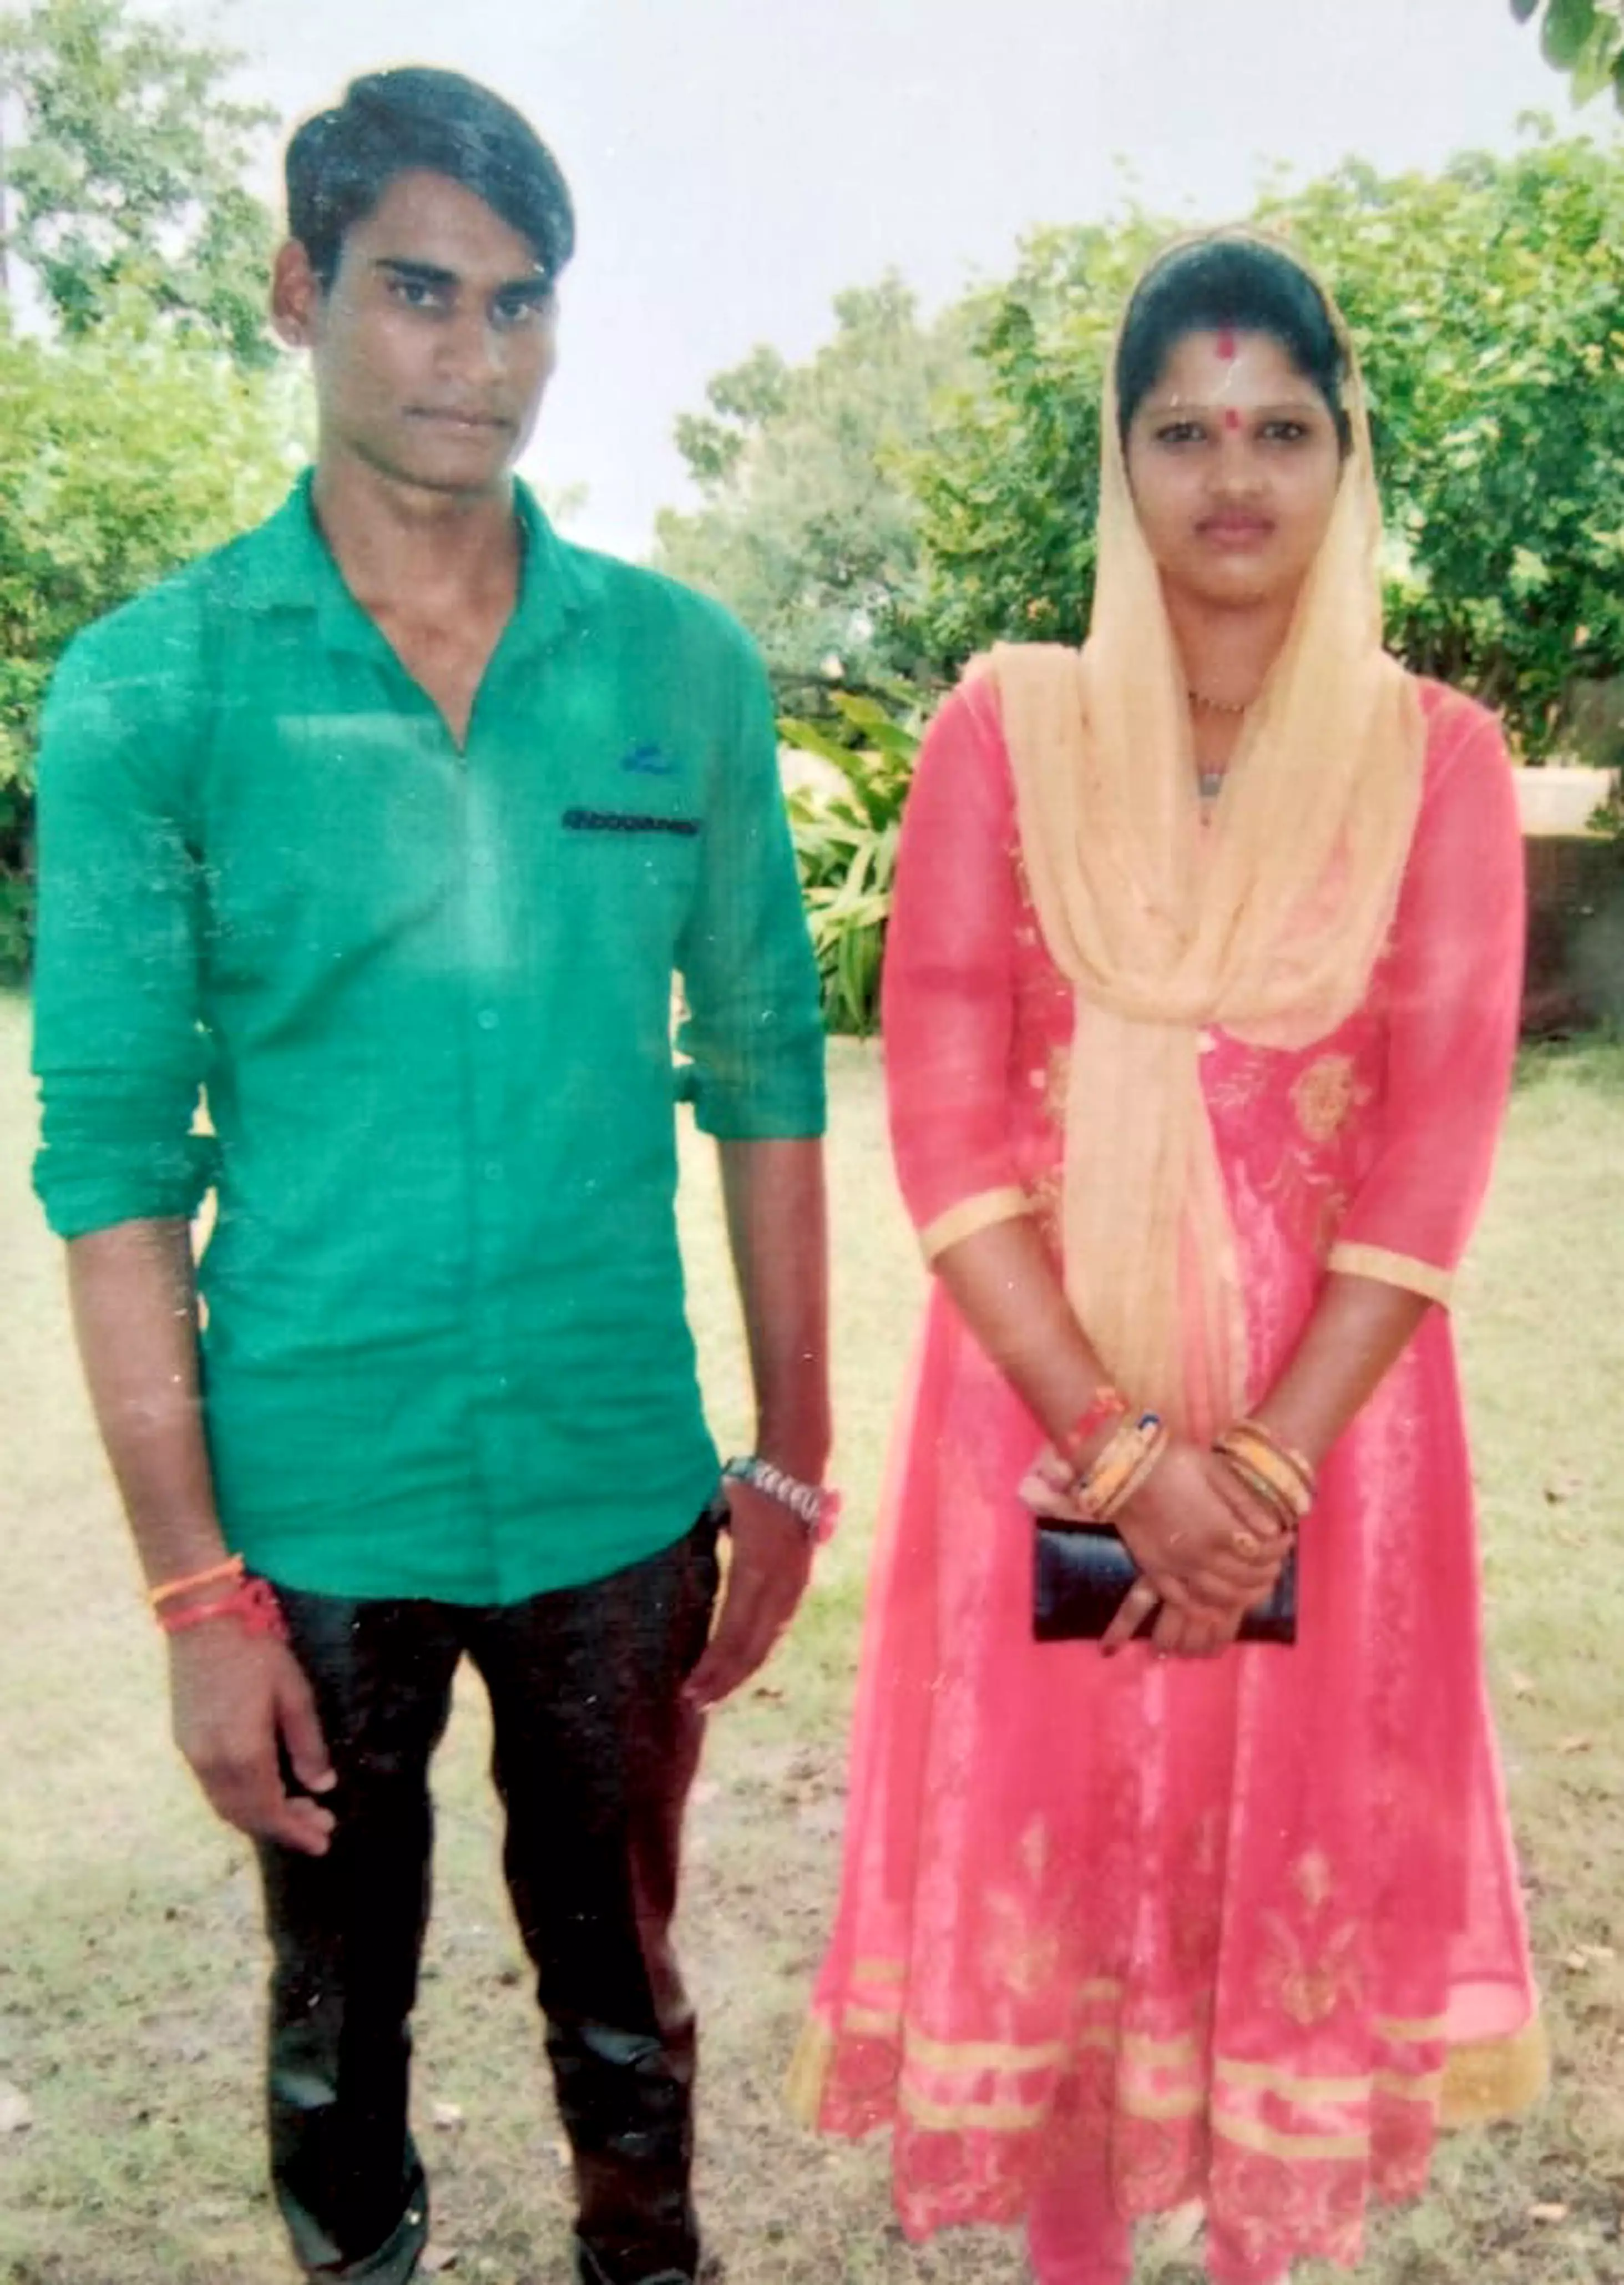 Jaswant Singh Ahirwar and his wife Babita Ahirwar.